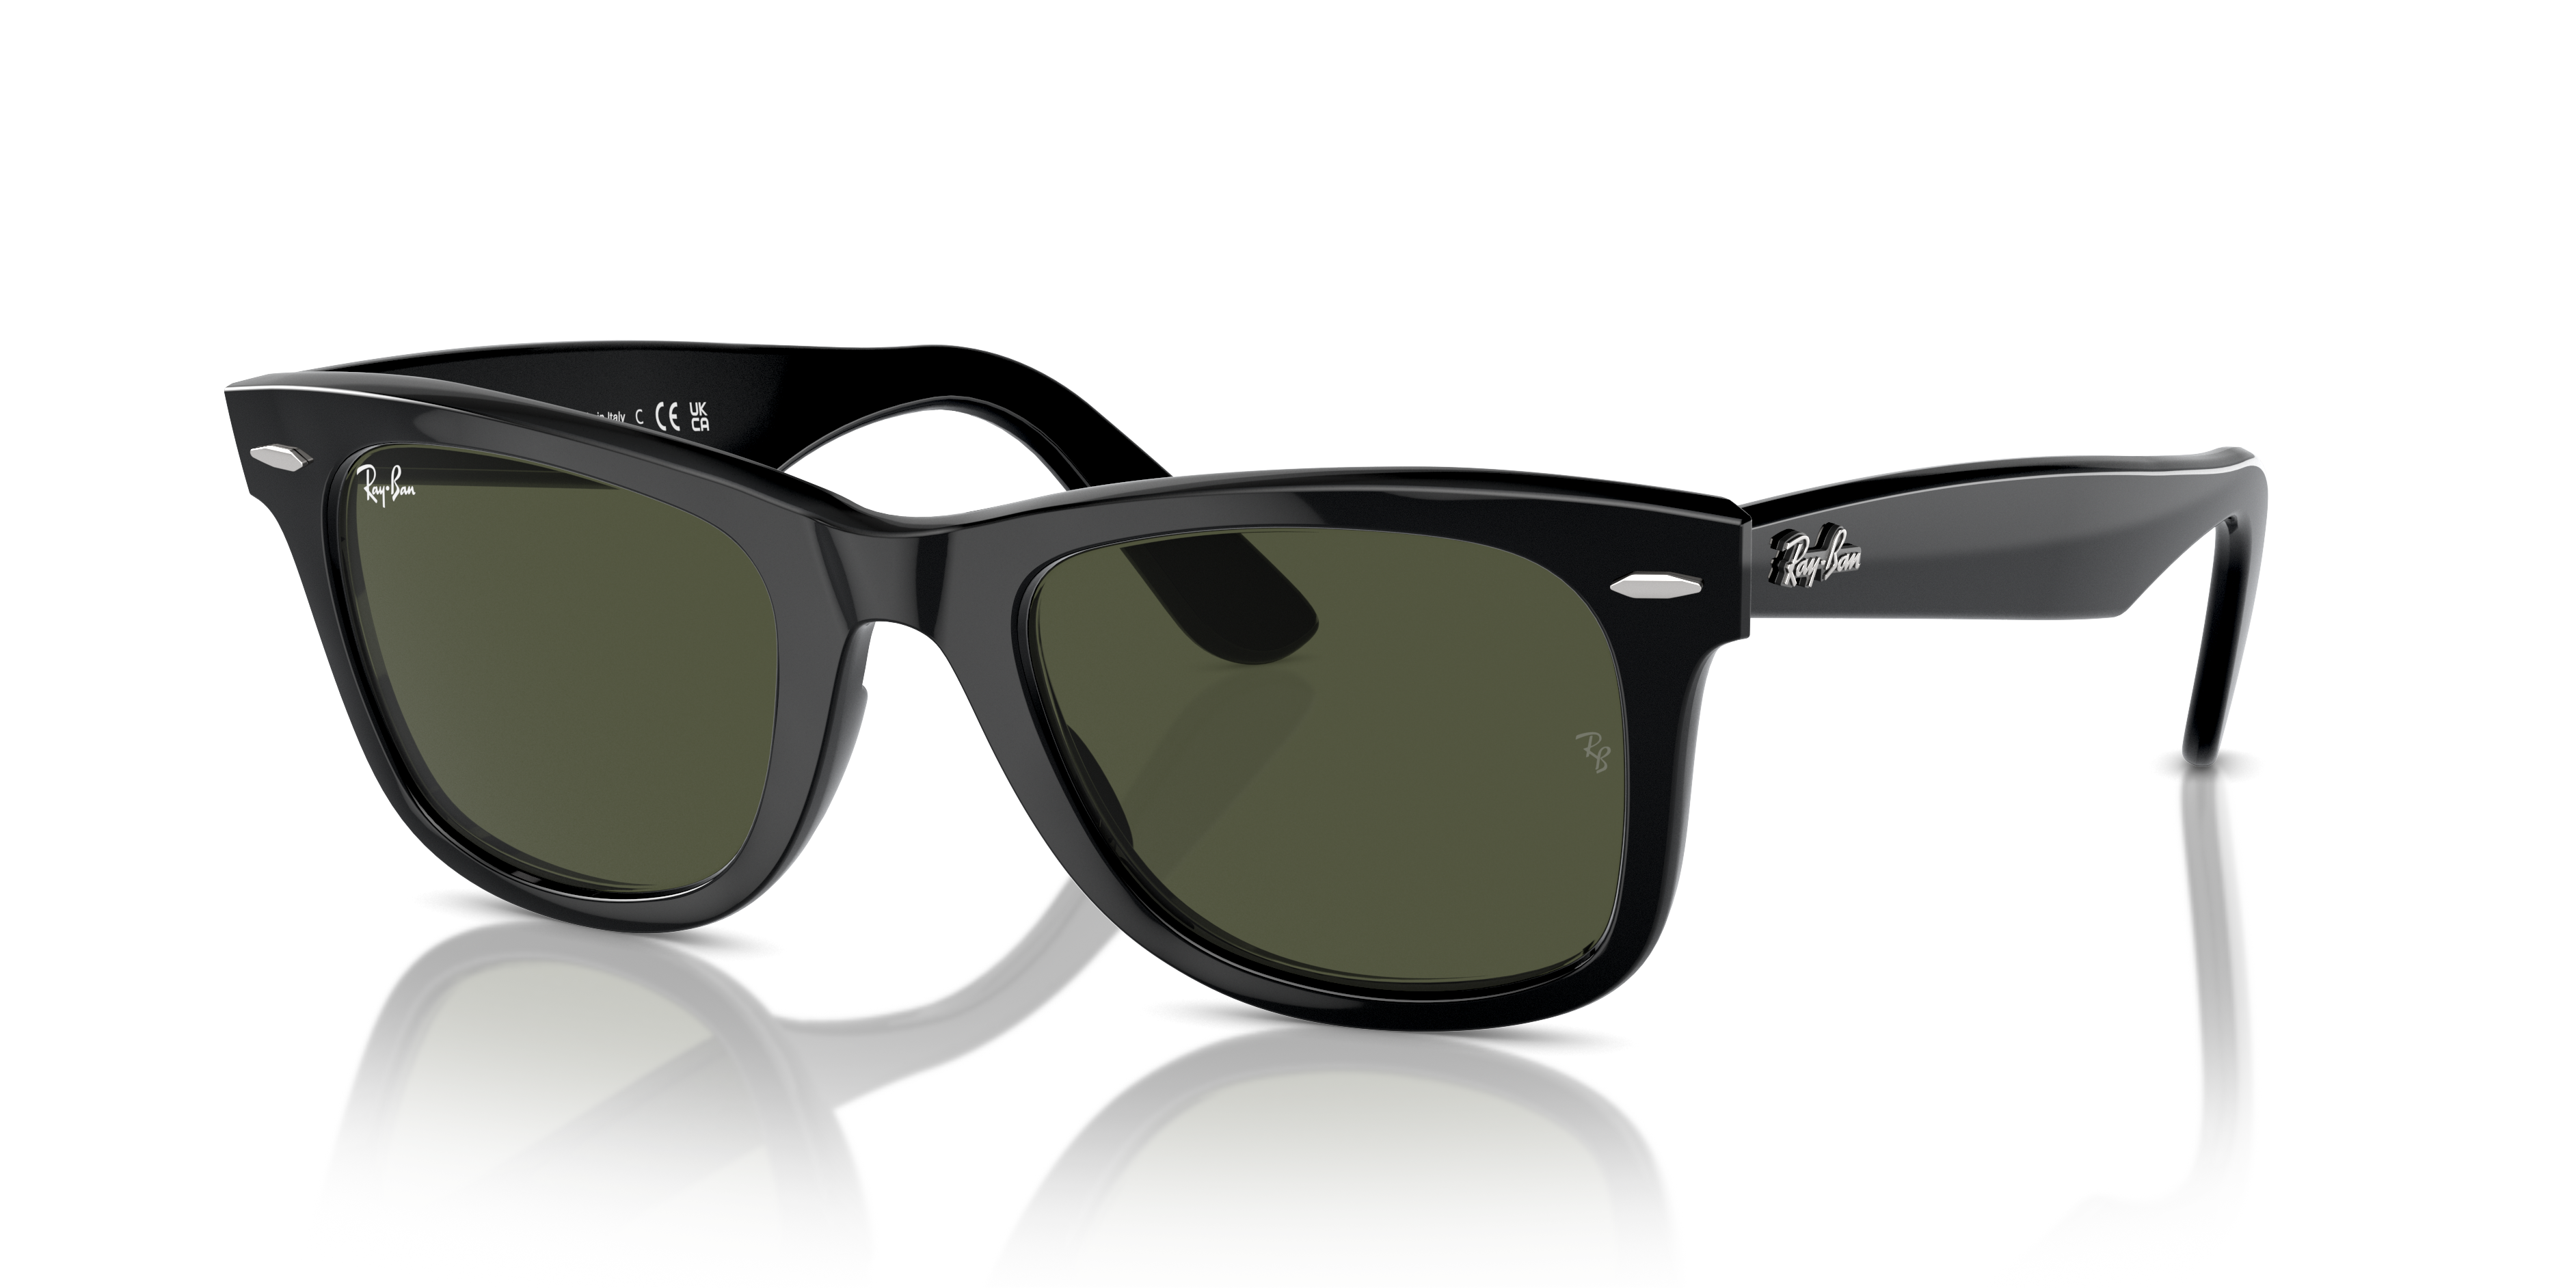 Sunglass Hut North Ryde | Sunglasses for Men, Women & Kids